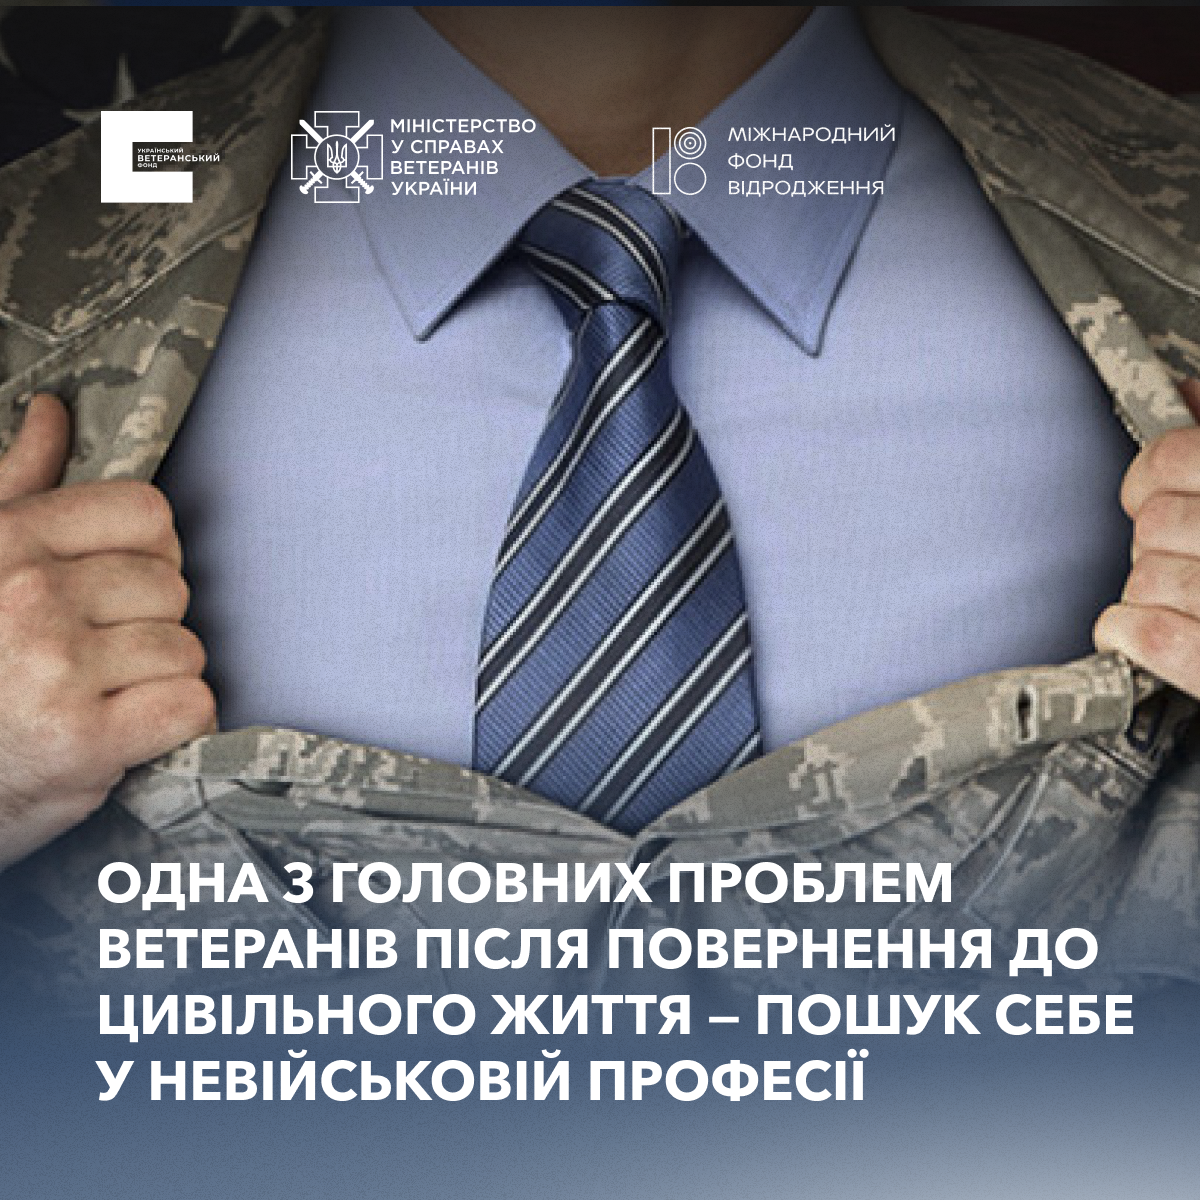 Міжнародний досвід у сфері працевлаштування ветеранів в Україні